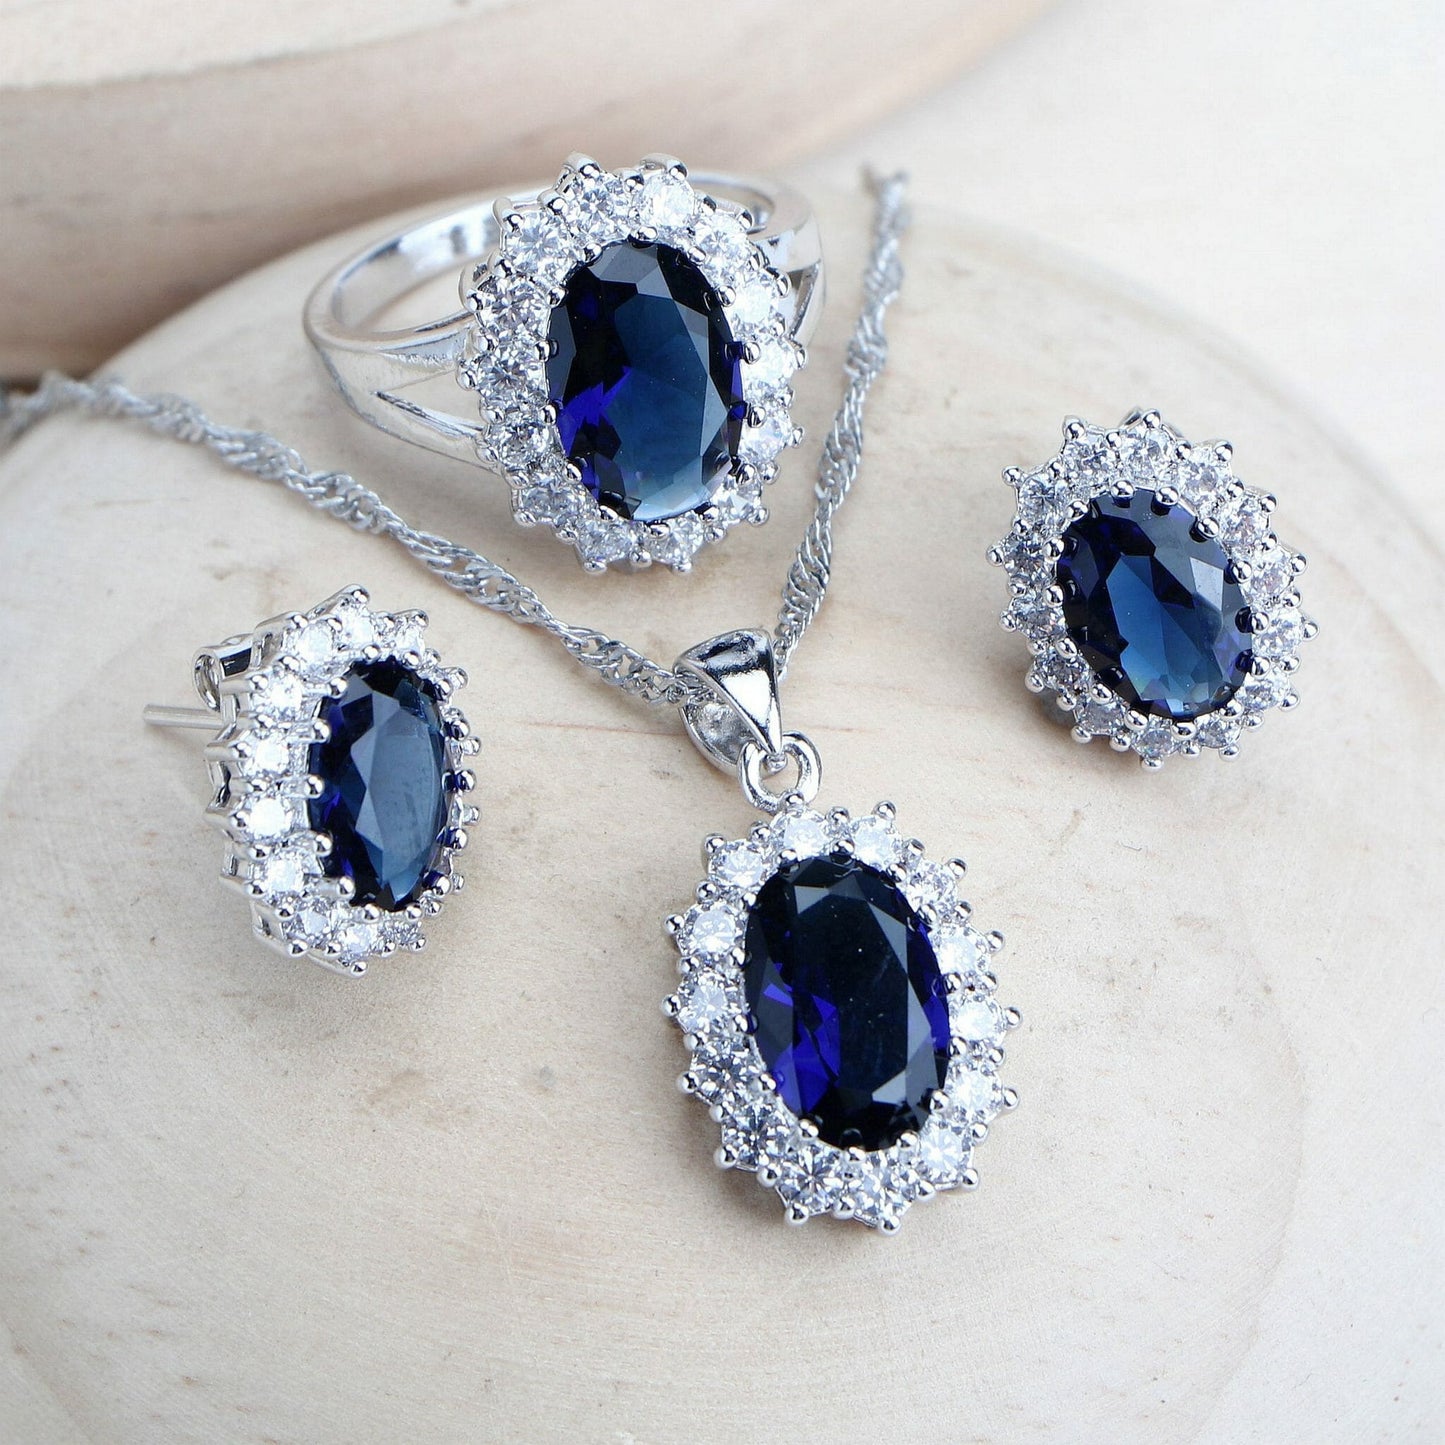 Women Bridal Jewelry Sets Blue Zirconia Fine Jewellery Wedding Necklace Earrings Rings Bracelets Pendant Set - Silver 925 Pendant Necklace